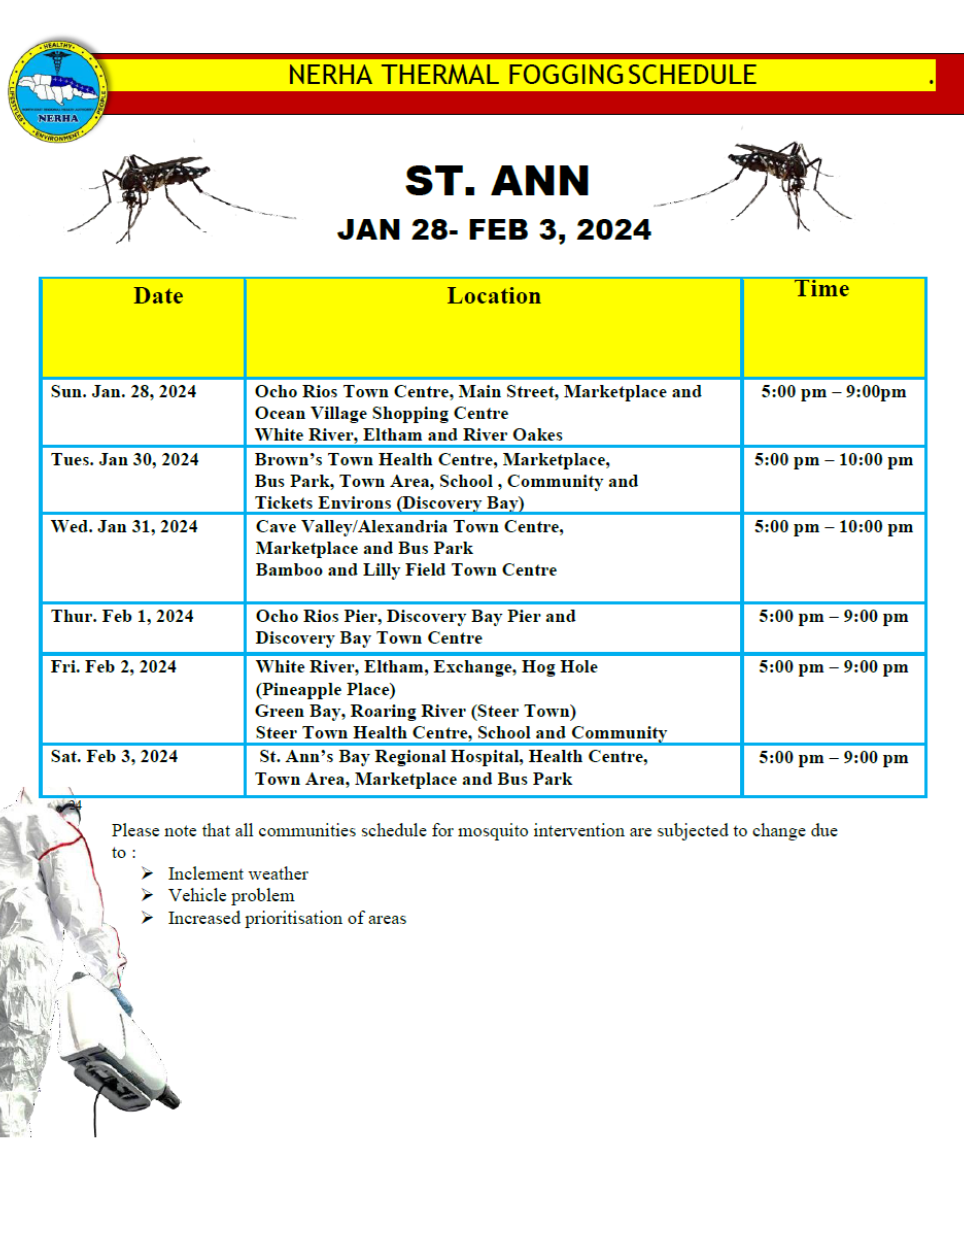 St Ann schedule